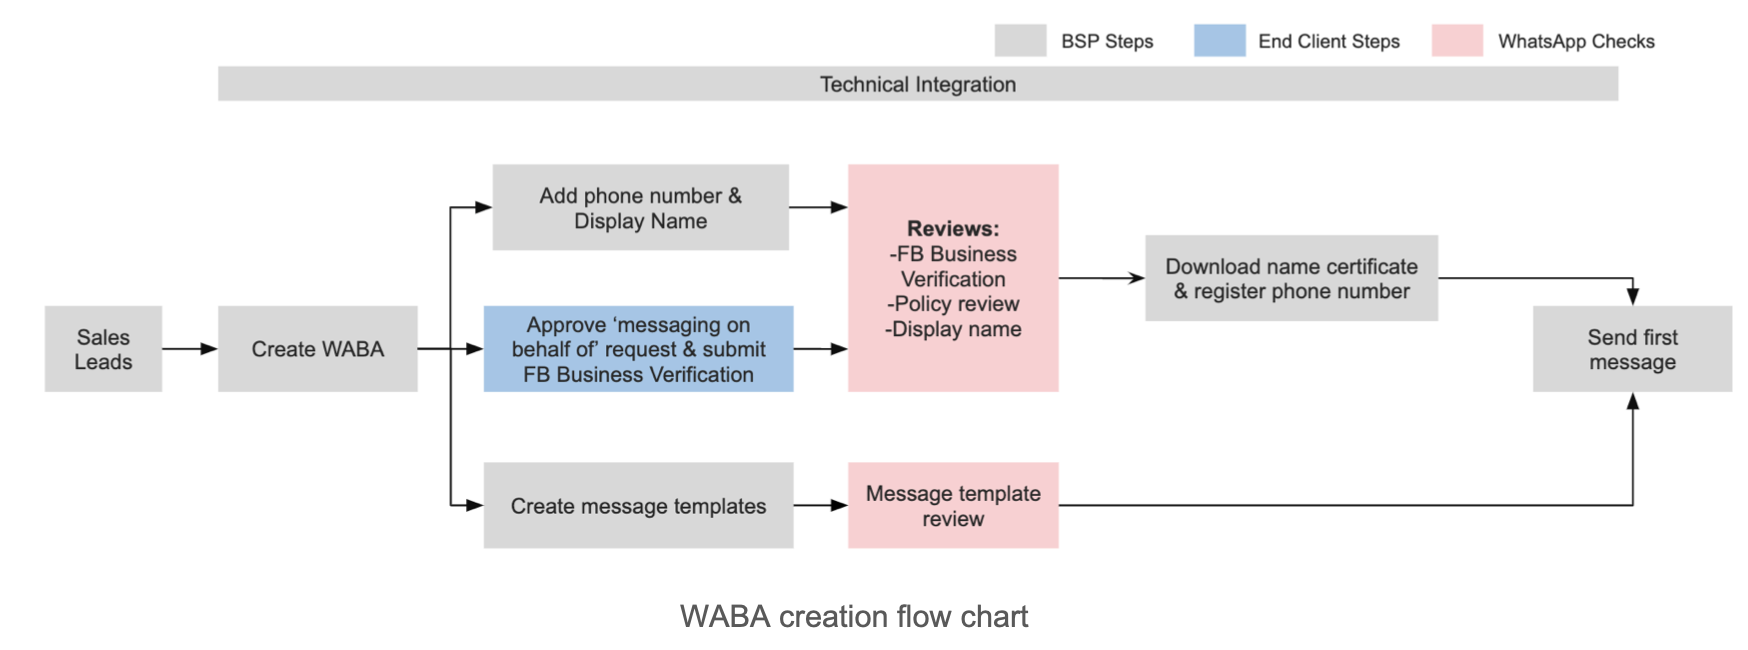 O fluxograma abaixo explica o processo de criação da conta do WhatsApp Business